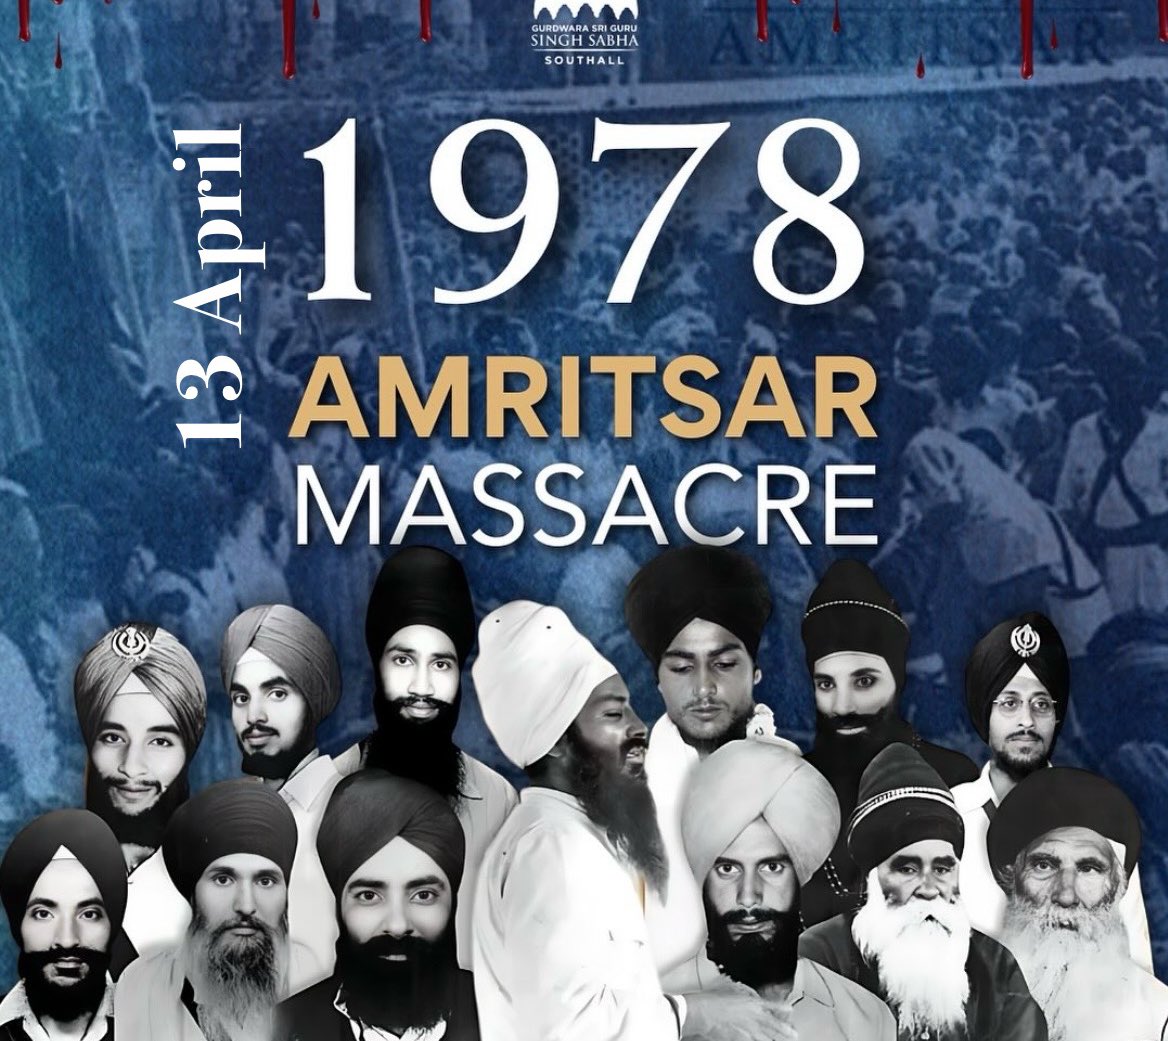 Some Sikh history on Vaisakhi - 1919 Jallianwala Bagh Massacre by the British & 1978 Amritsar Massacre by the Indian Govt. #Sikhs #Vaisakhi #Khalsa